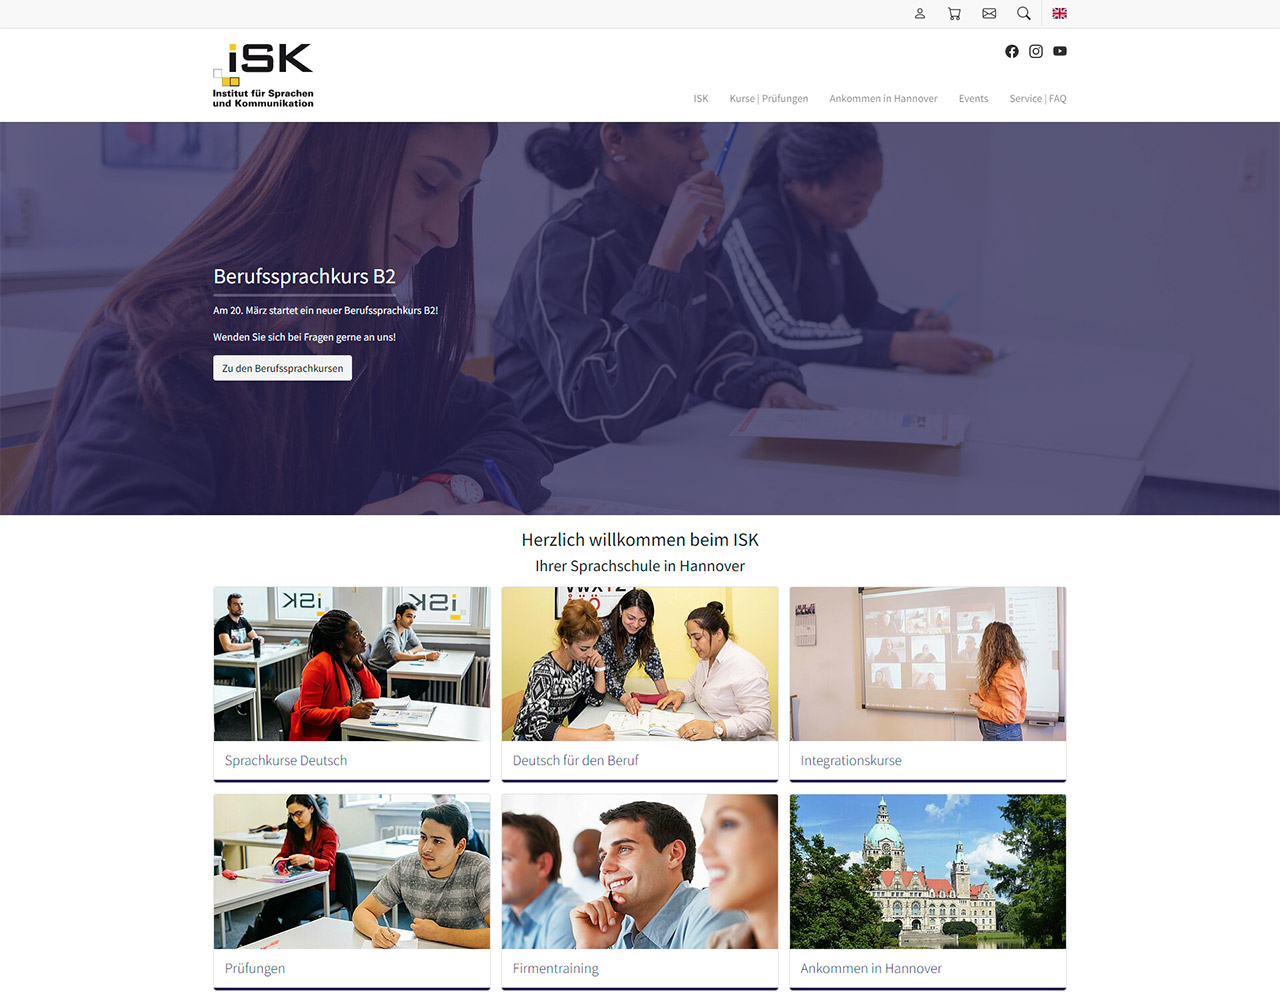 ISK - Institut für Sprachen und Kommunikation, Hannover